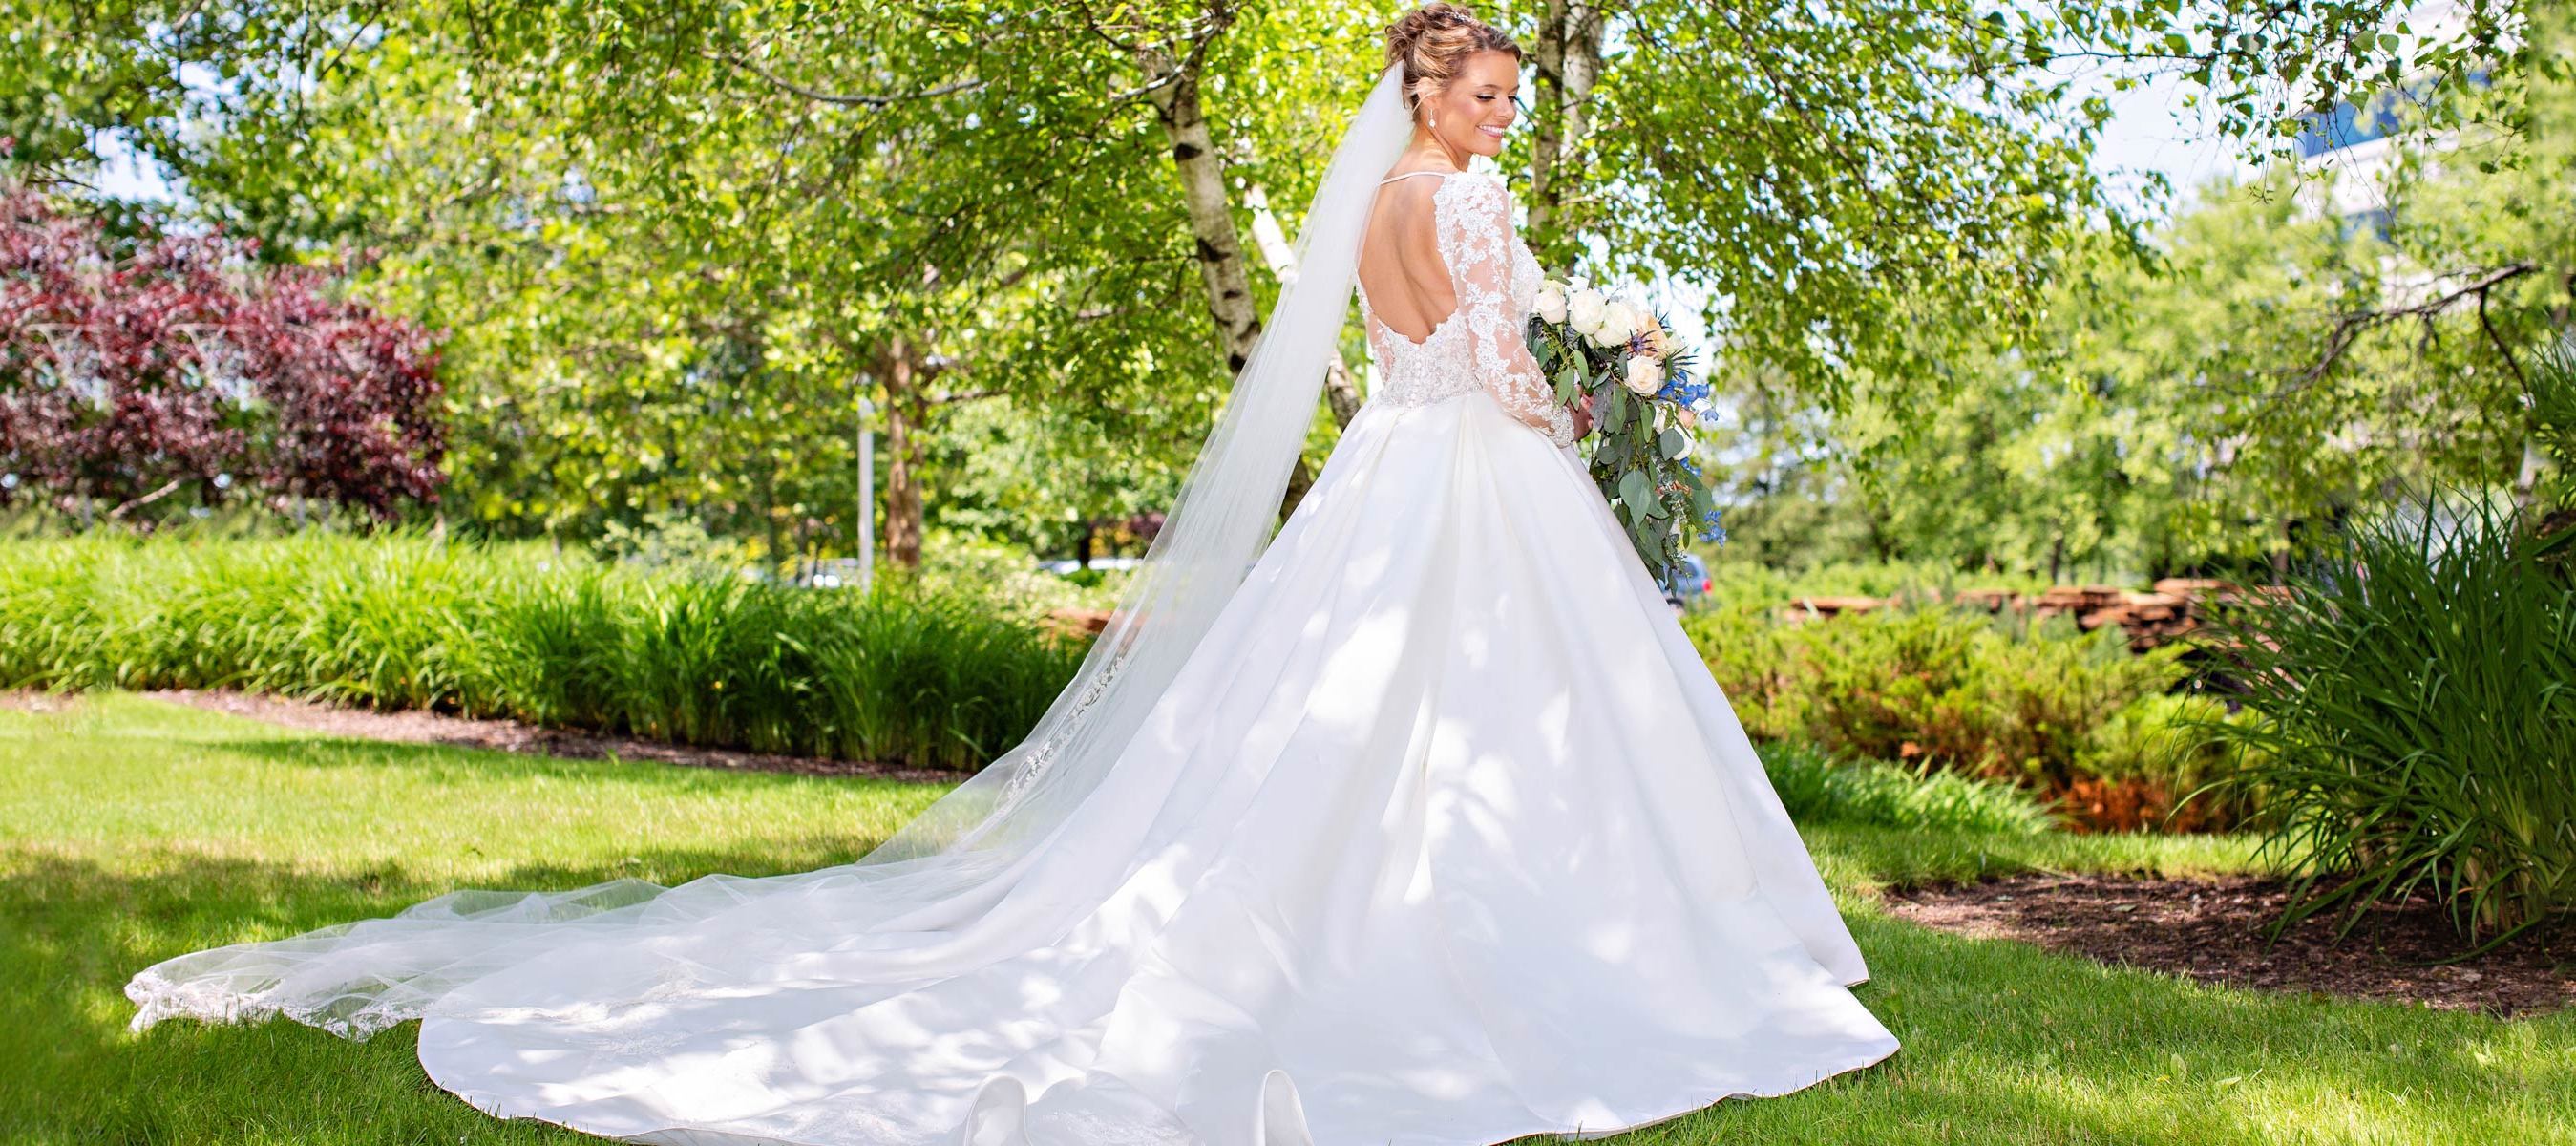 bride in white wedding dress